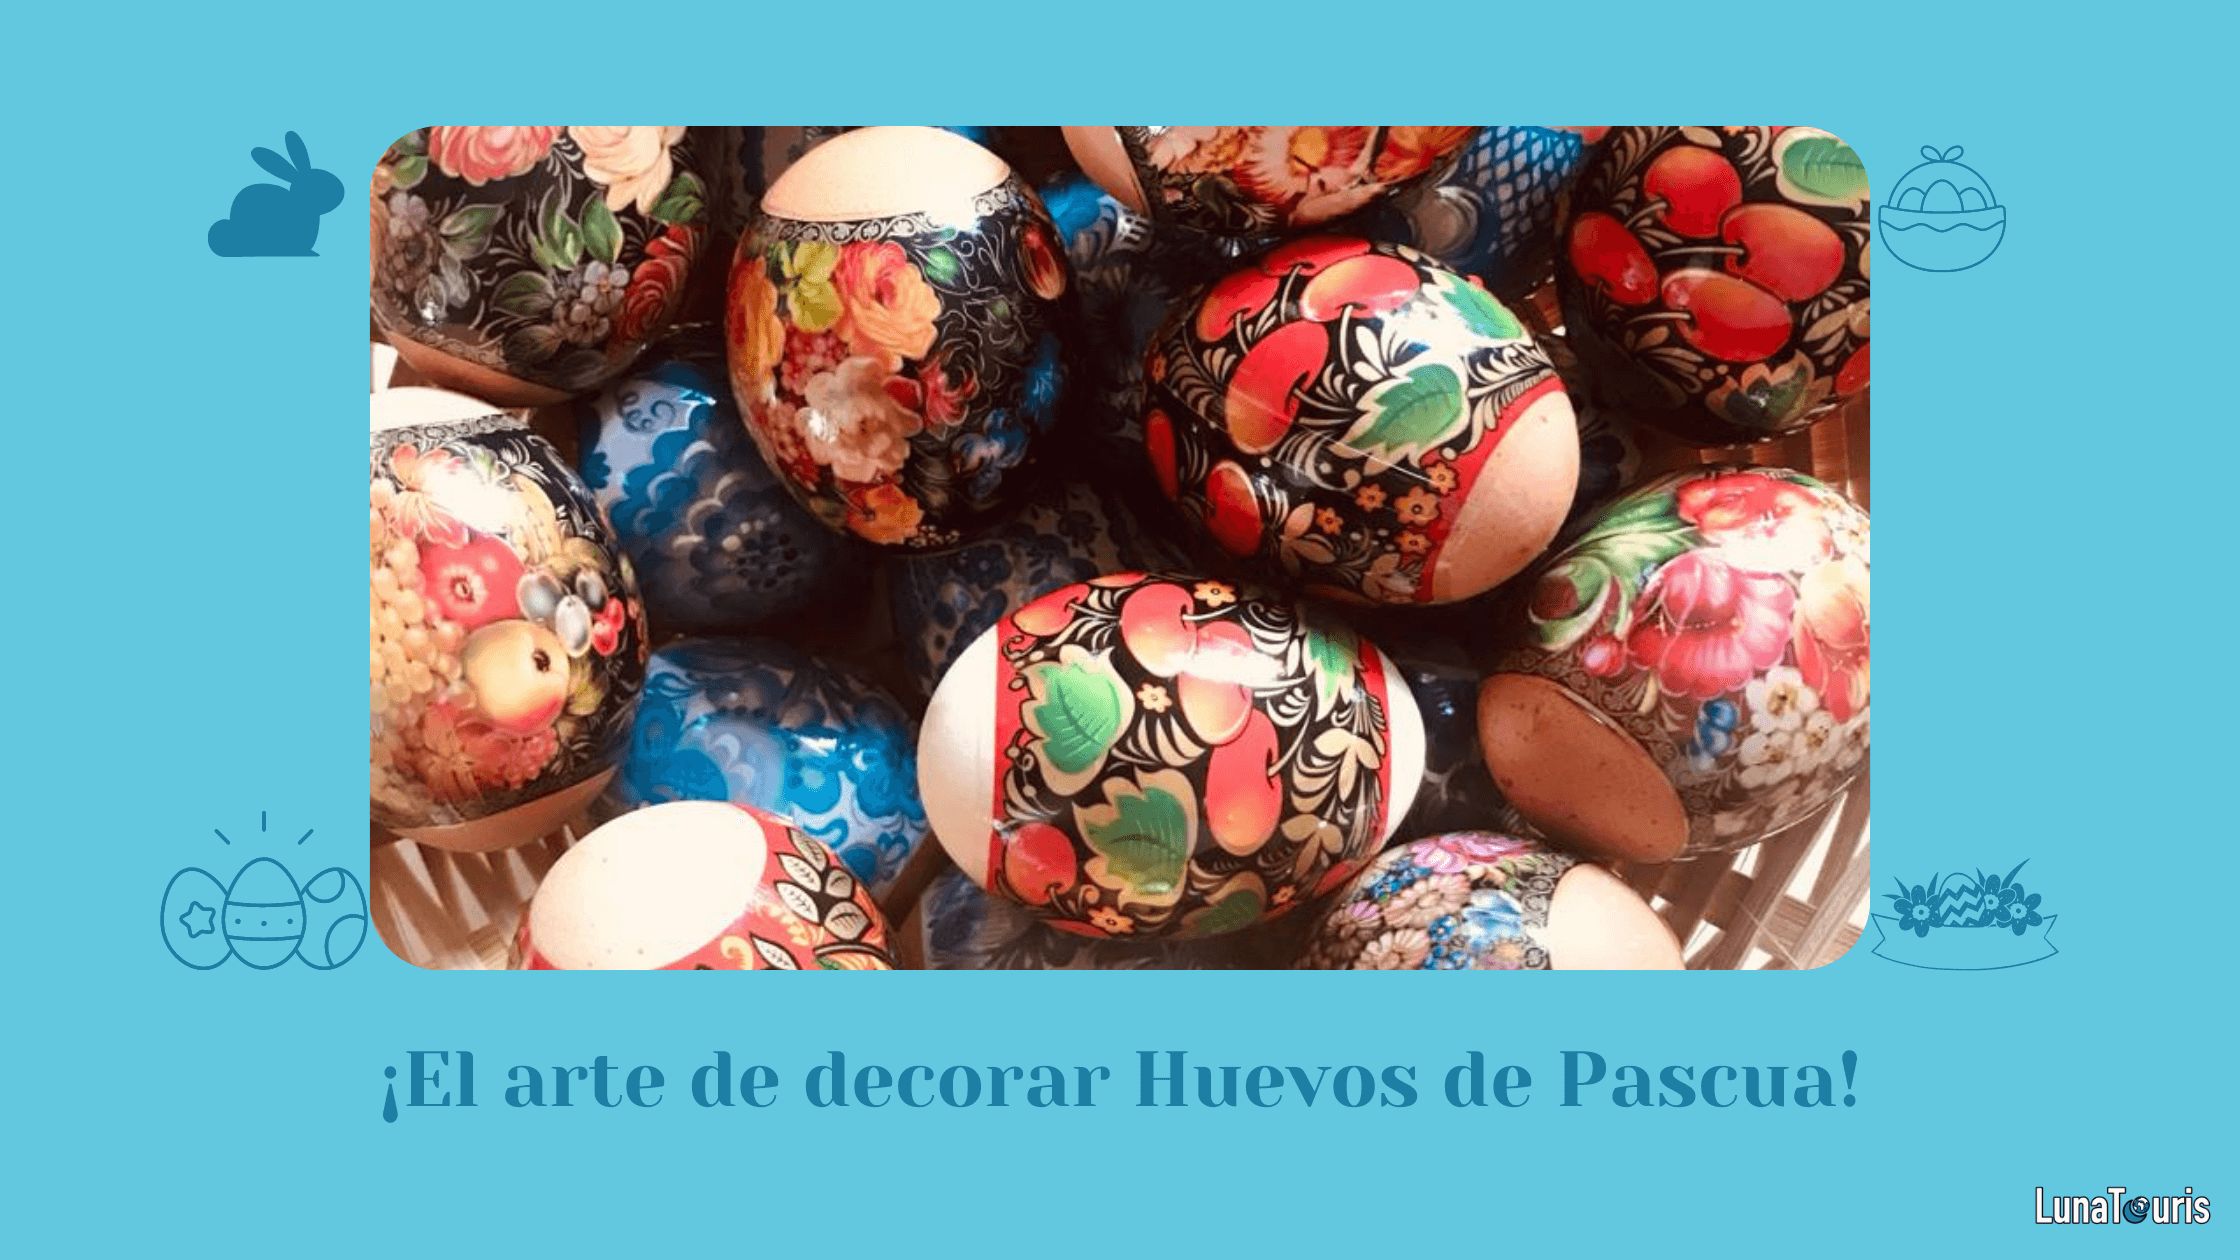 Dónde surgió la tradición de decorar y regalar huevos de Pascua?